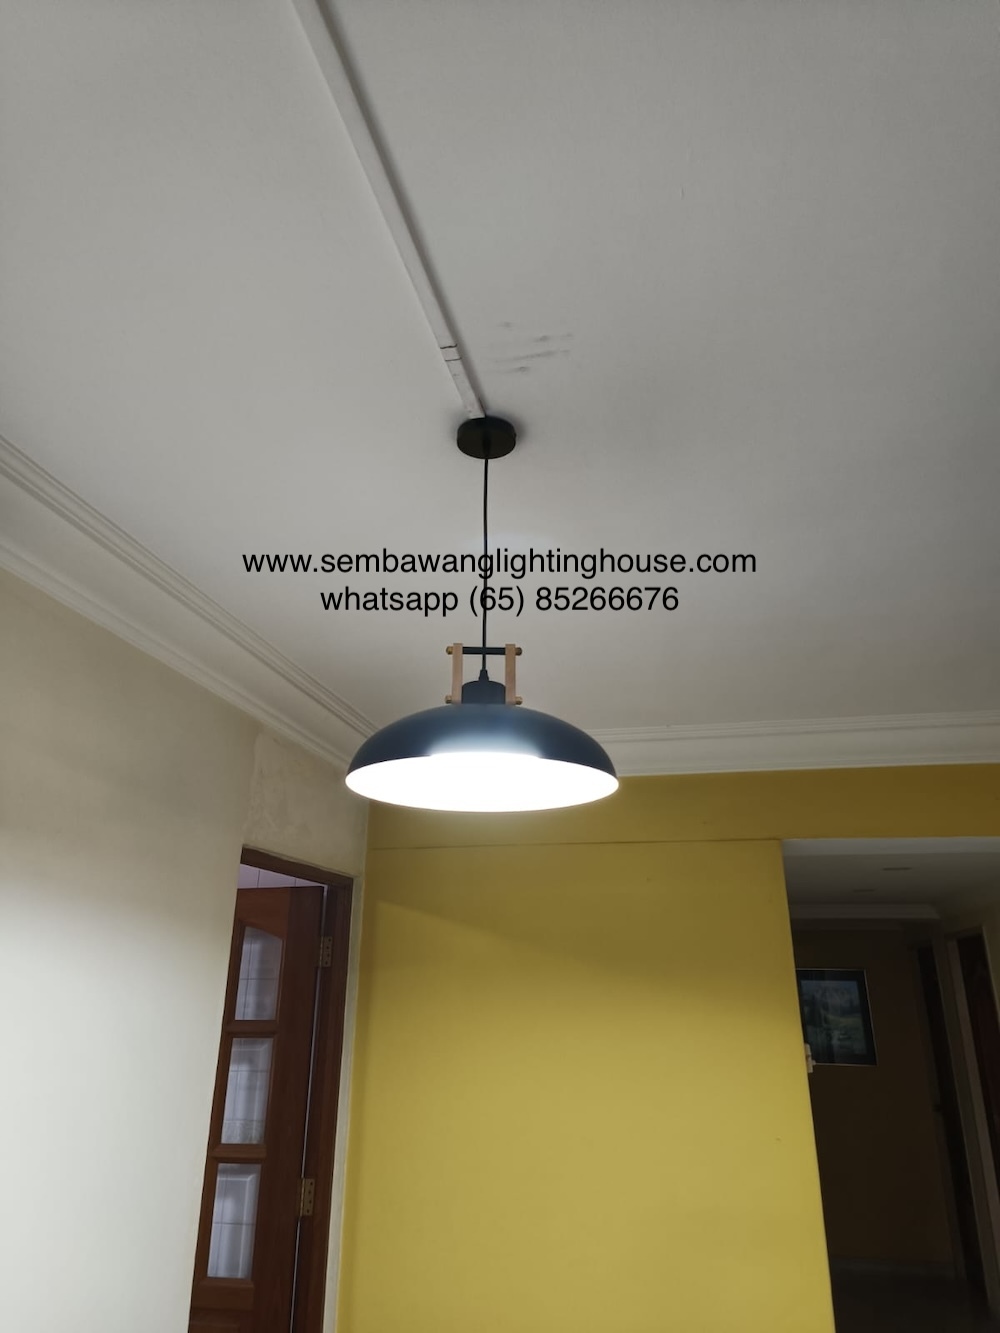 3815-1-black-drum-e27-pendant-lamp-sembawang-lighting-house.jpg